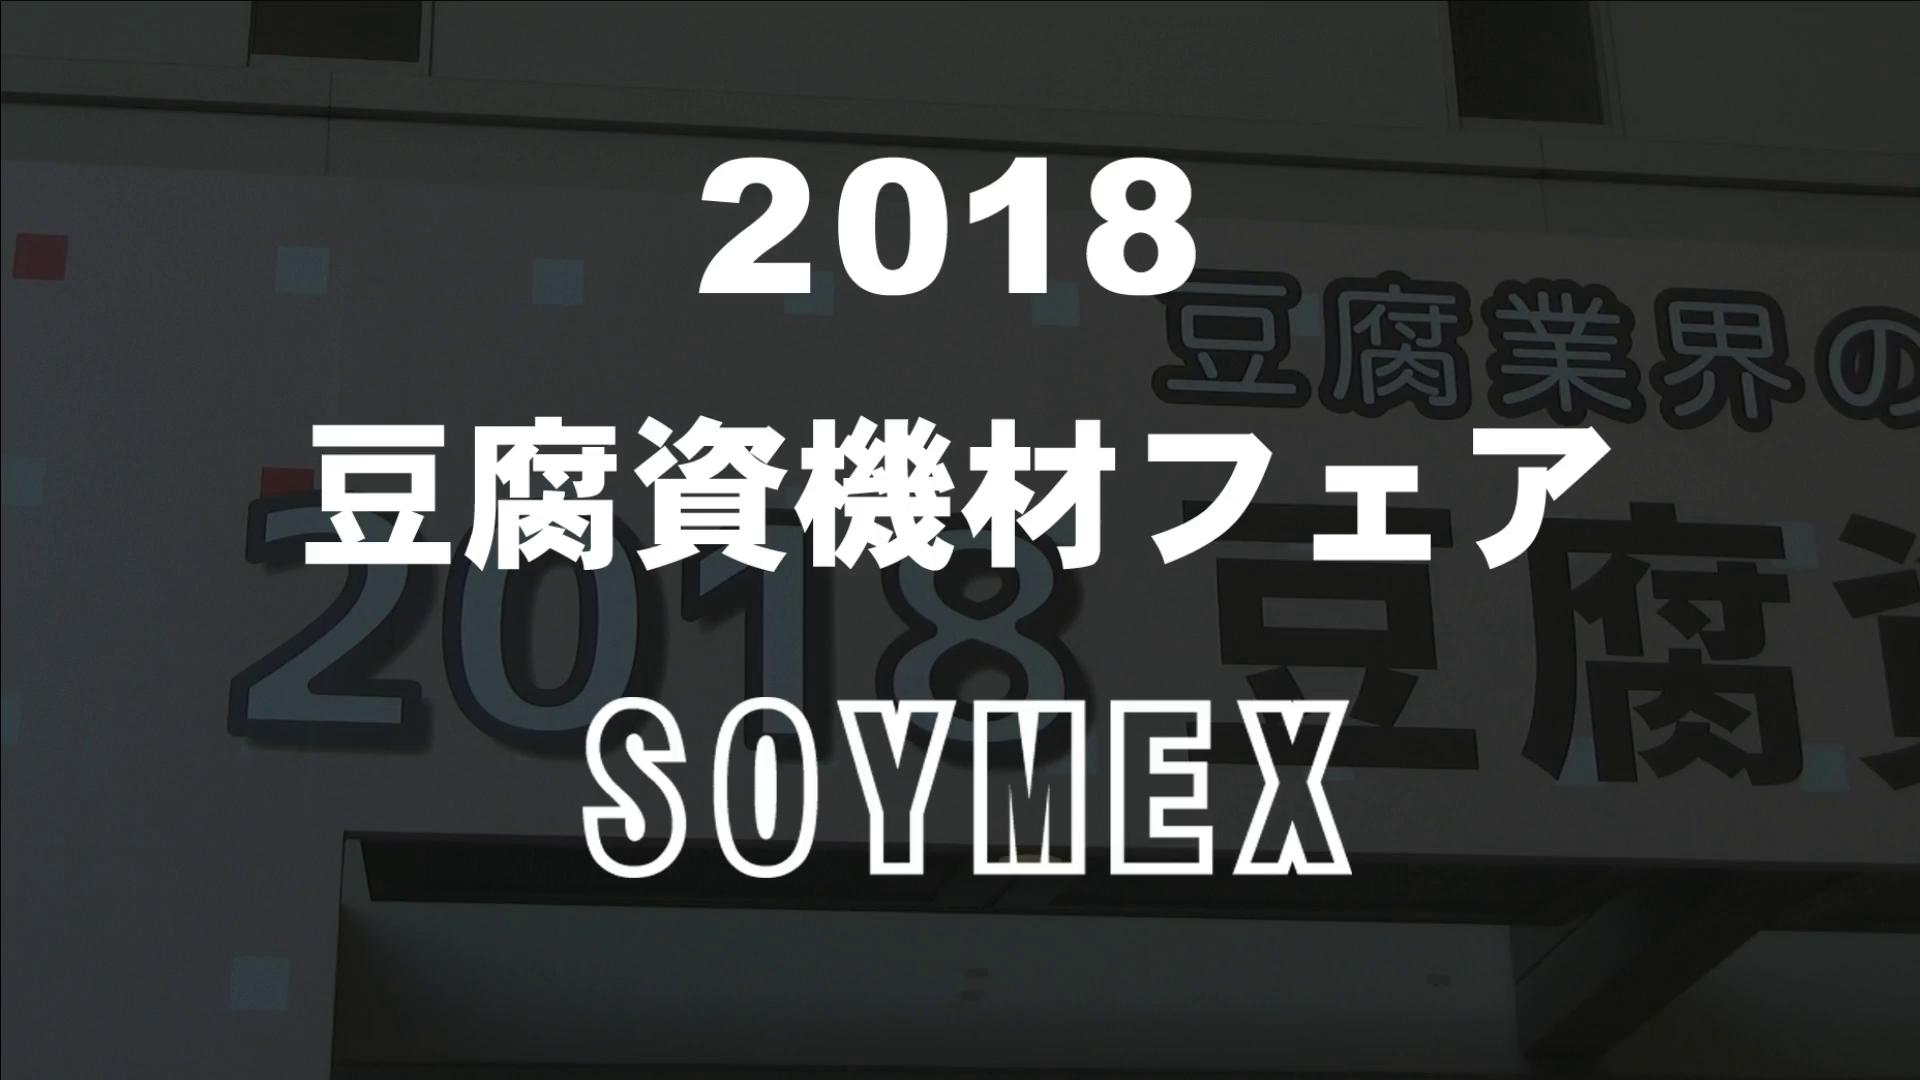 2018豆腐資機材フェアSOYMEX